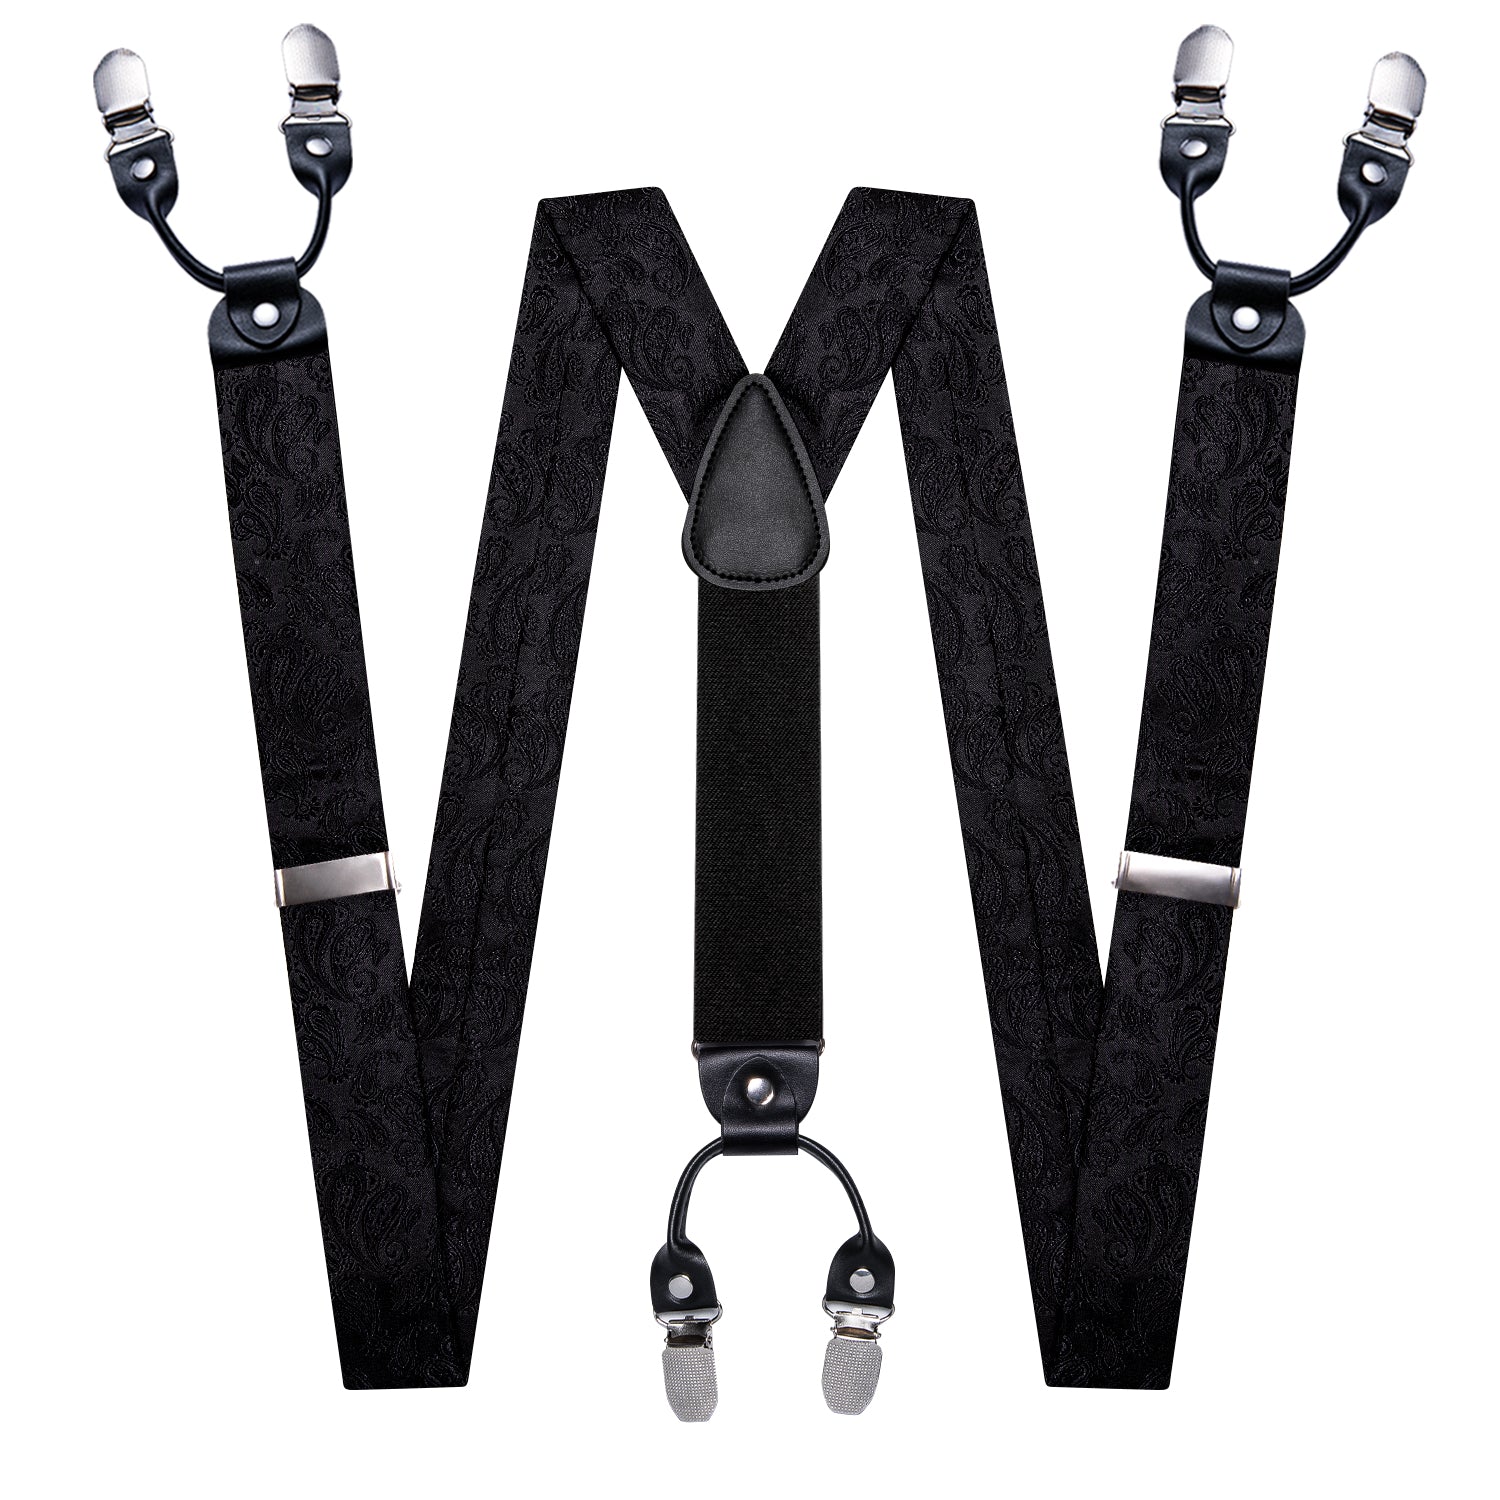 Black Paisley Y Back Adjustable Bow Tie Suspenders Set